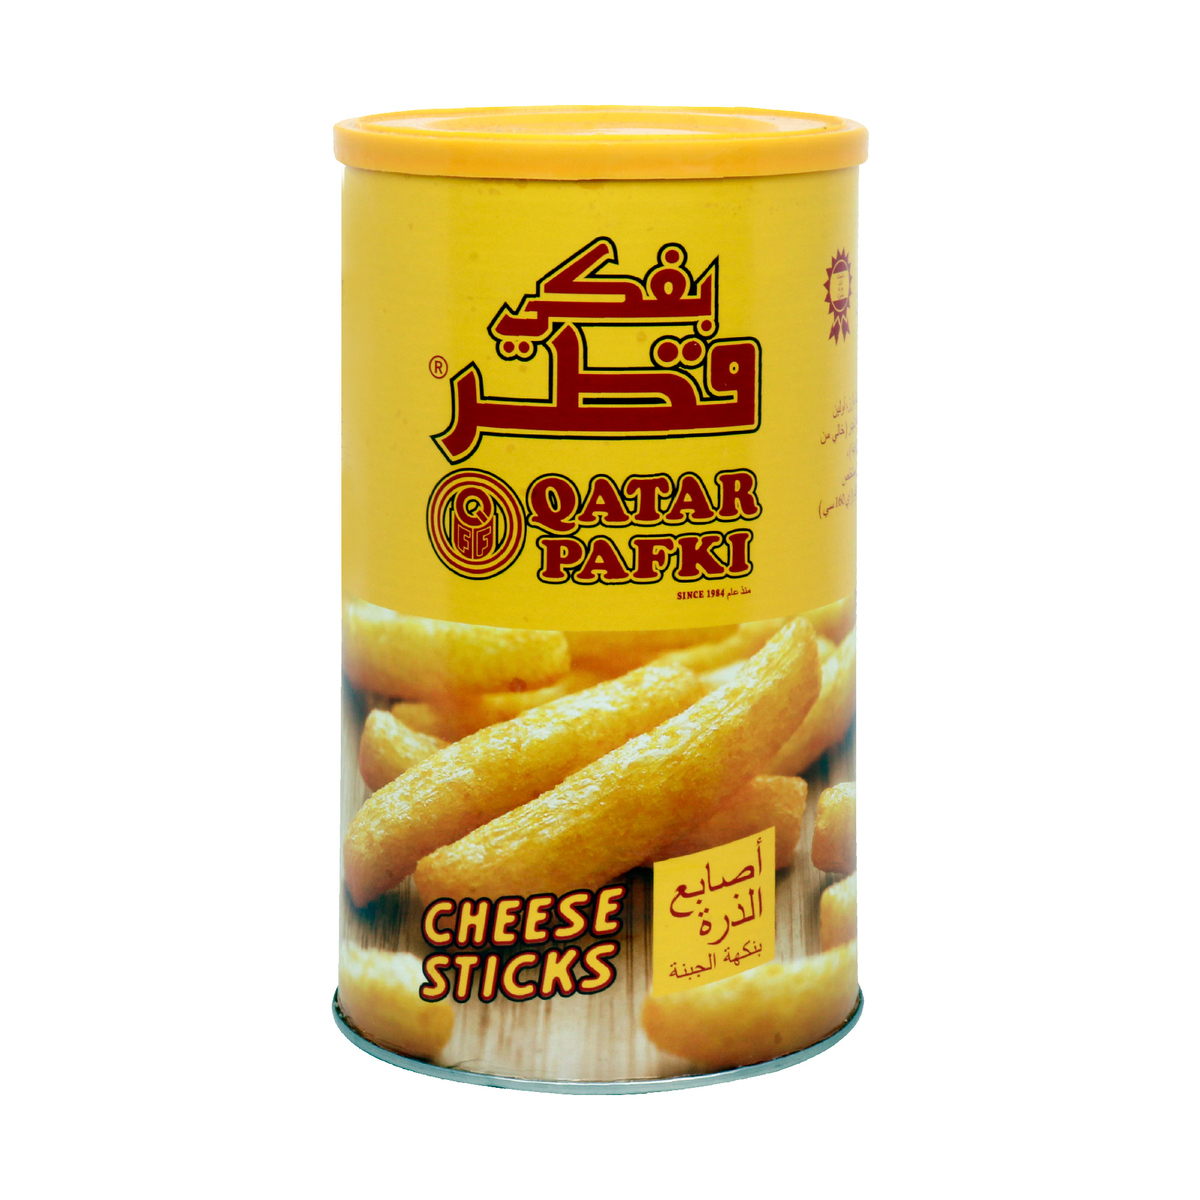 Qatar Pafki Cheese Sticks 80g